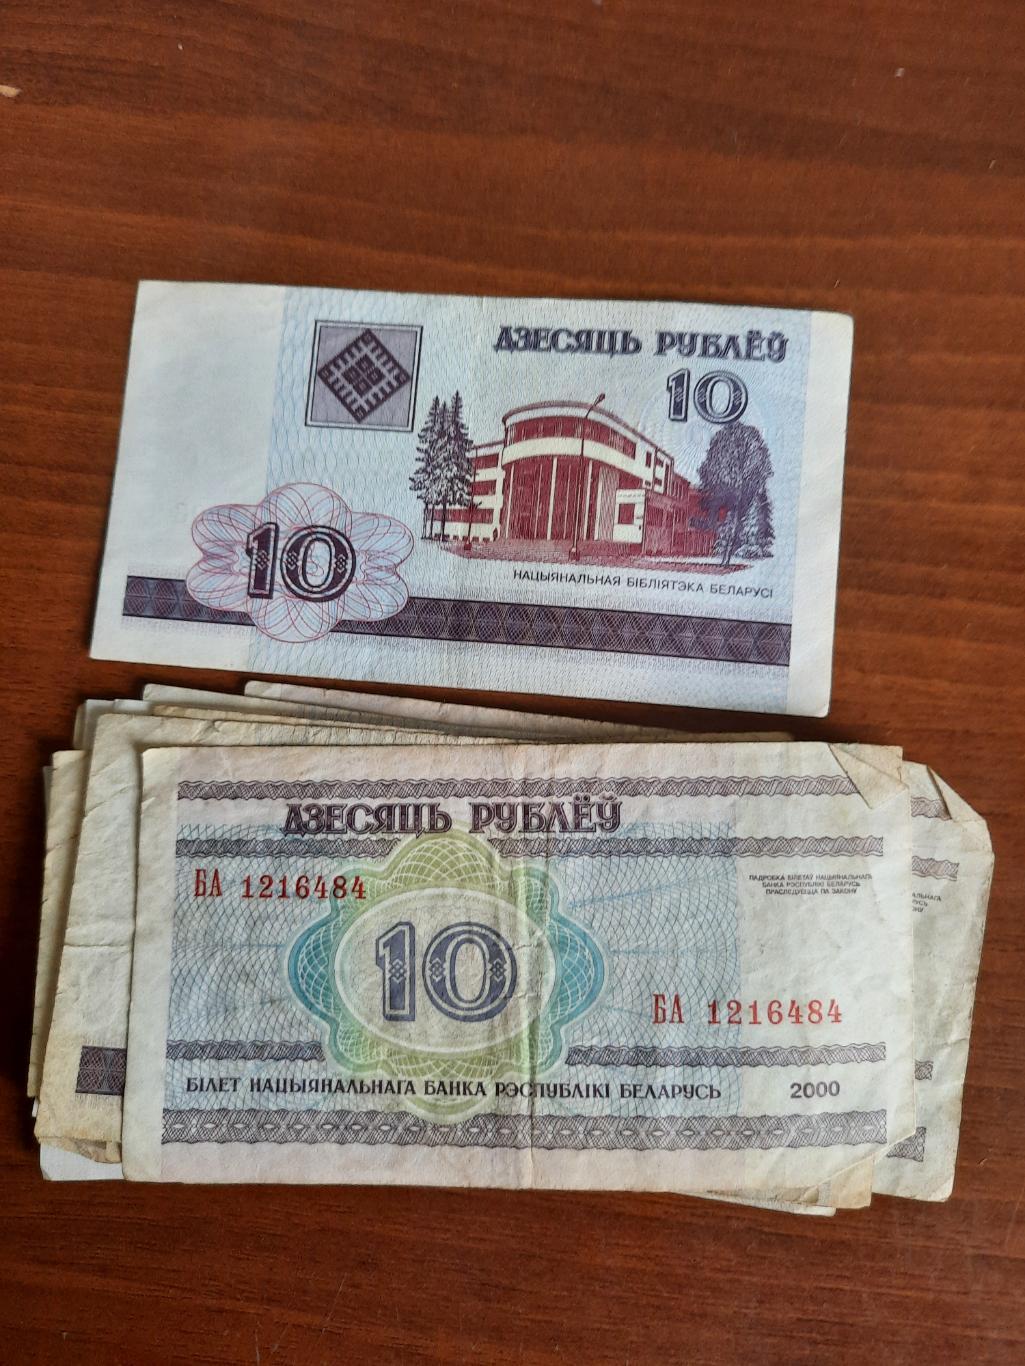 Беларусь. 10 рублей 2000 год (одна купюра) серия бг 2210835